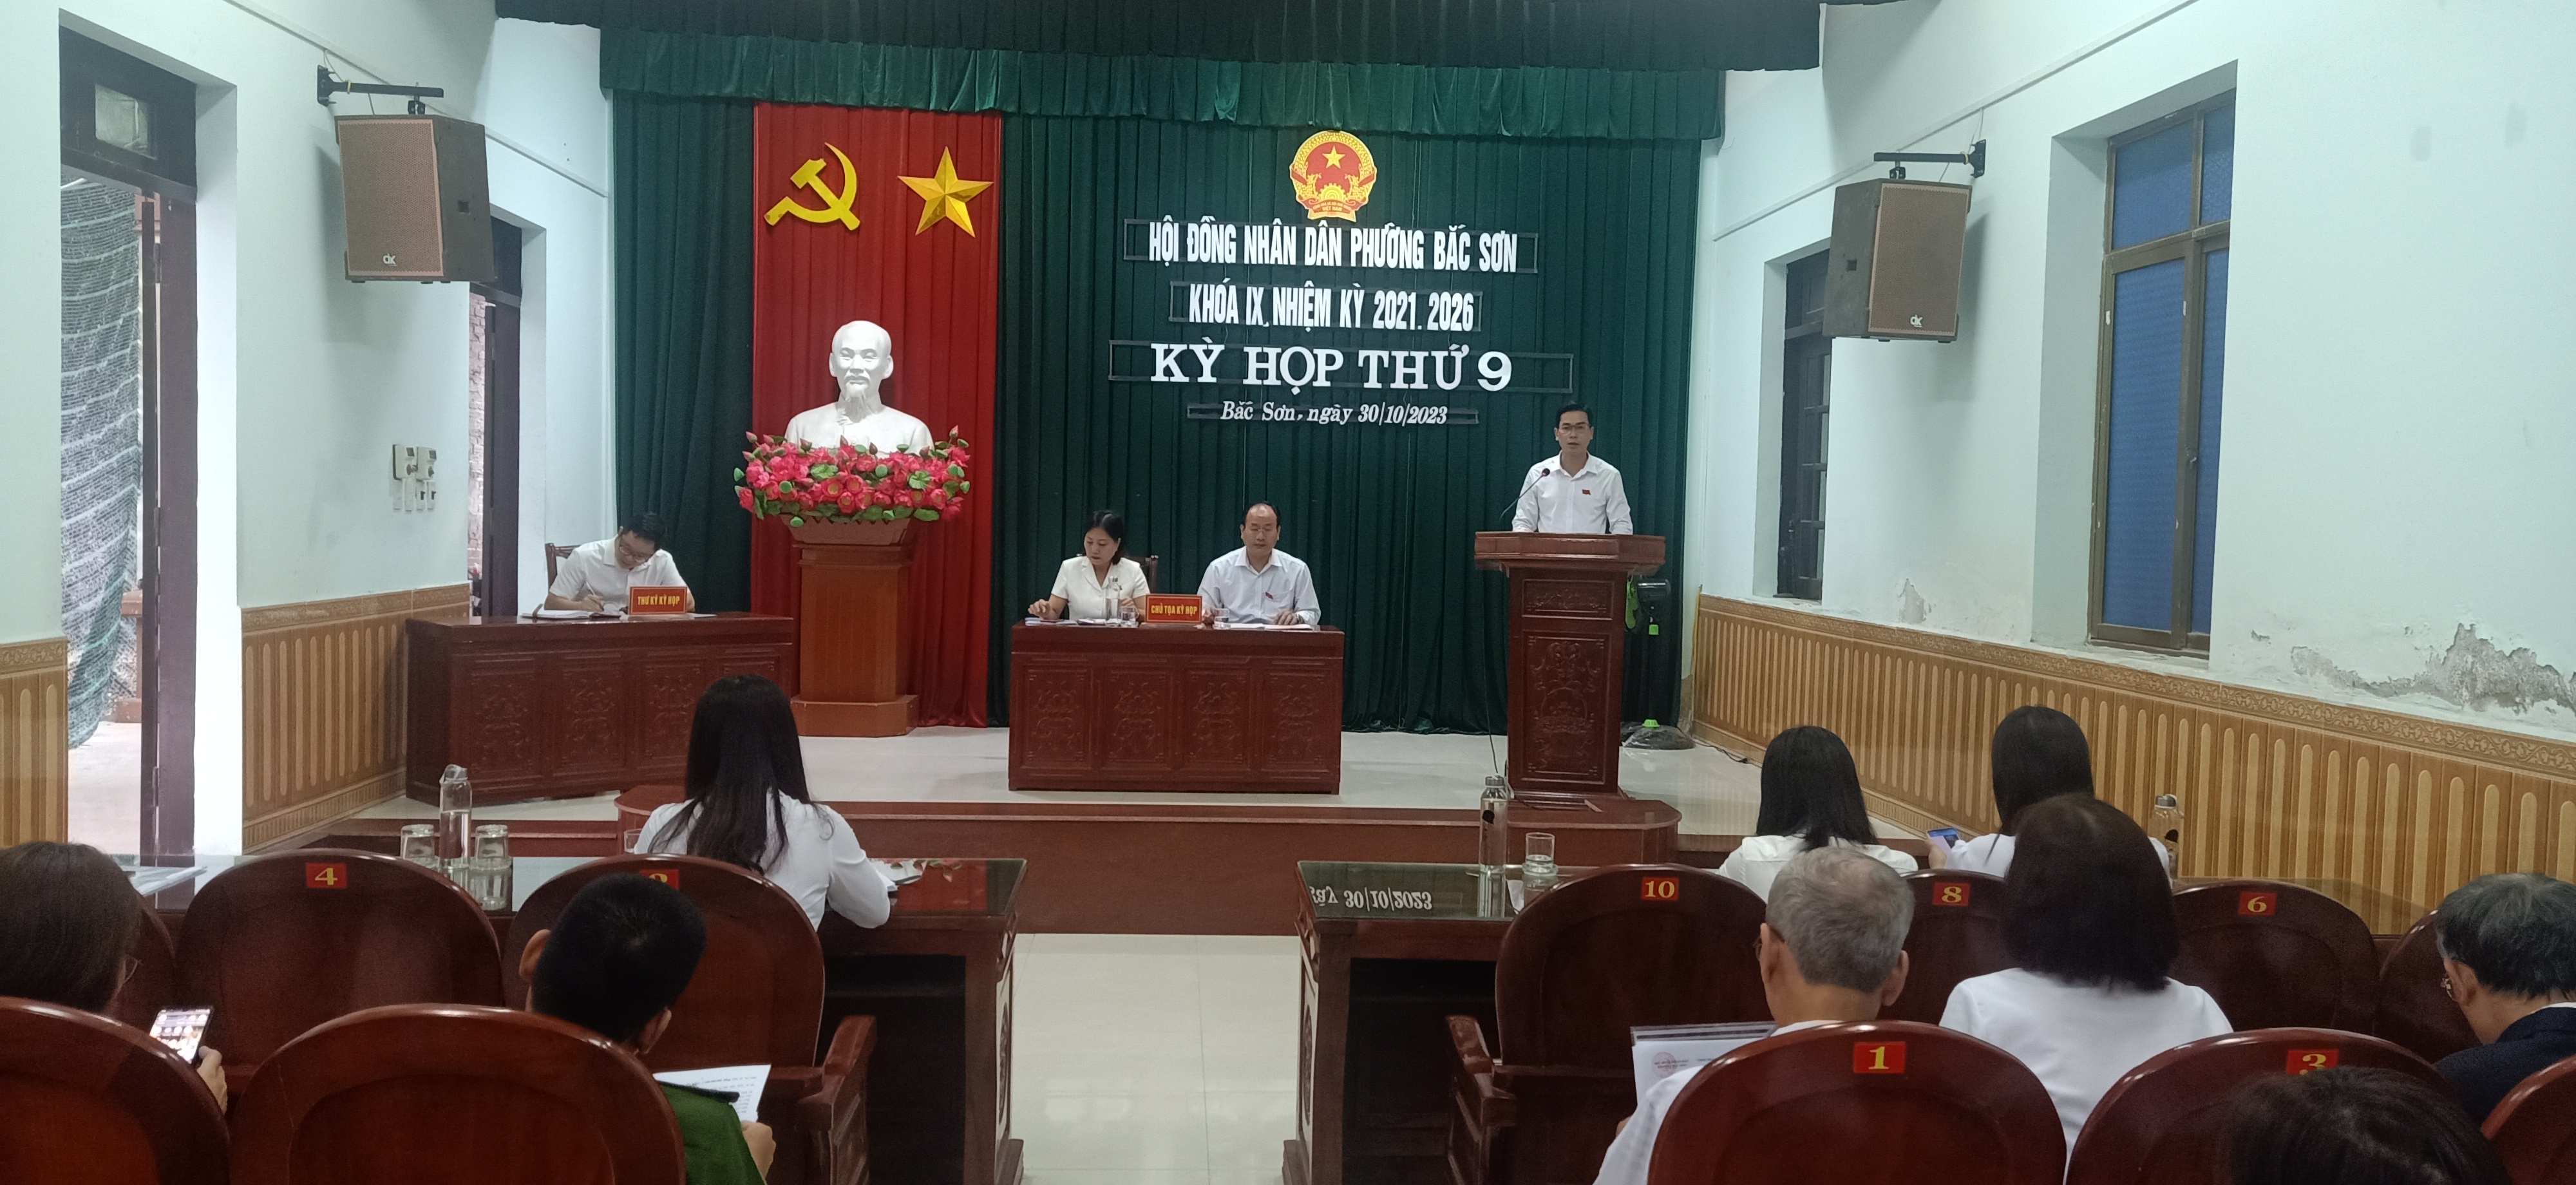 HĐND phường Bắc Sơn tổ chức kỳ họp thứ 9 HĐND phường khóa IX, nhiệm kỳ 2021-2026